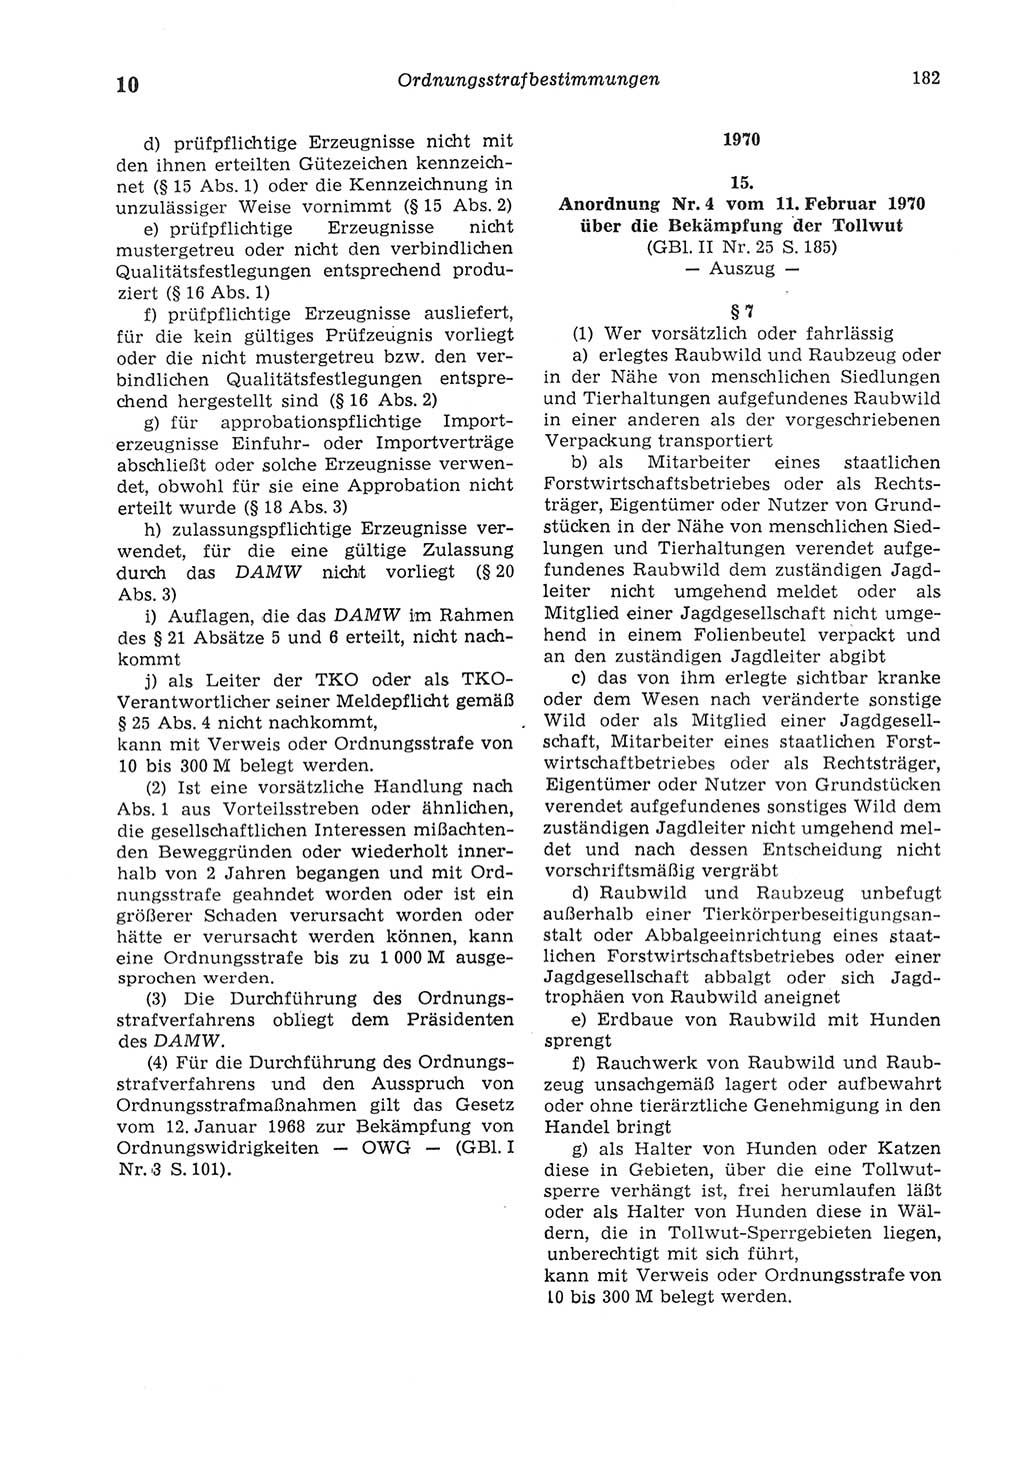 Strafgesetzbuch (StGB) der Deutschen Demokratischen Republik (DDR) und angrenzende Gesetze und Bestimmungen 1975, Seite 182 (StGB DDR Ges. Best. 1975, S. 182)